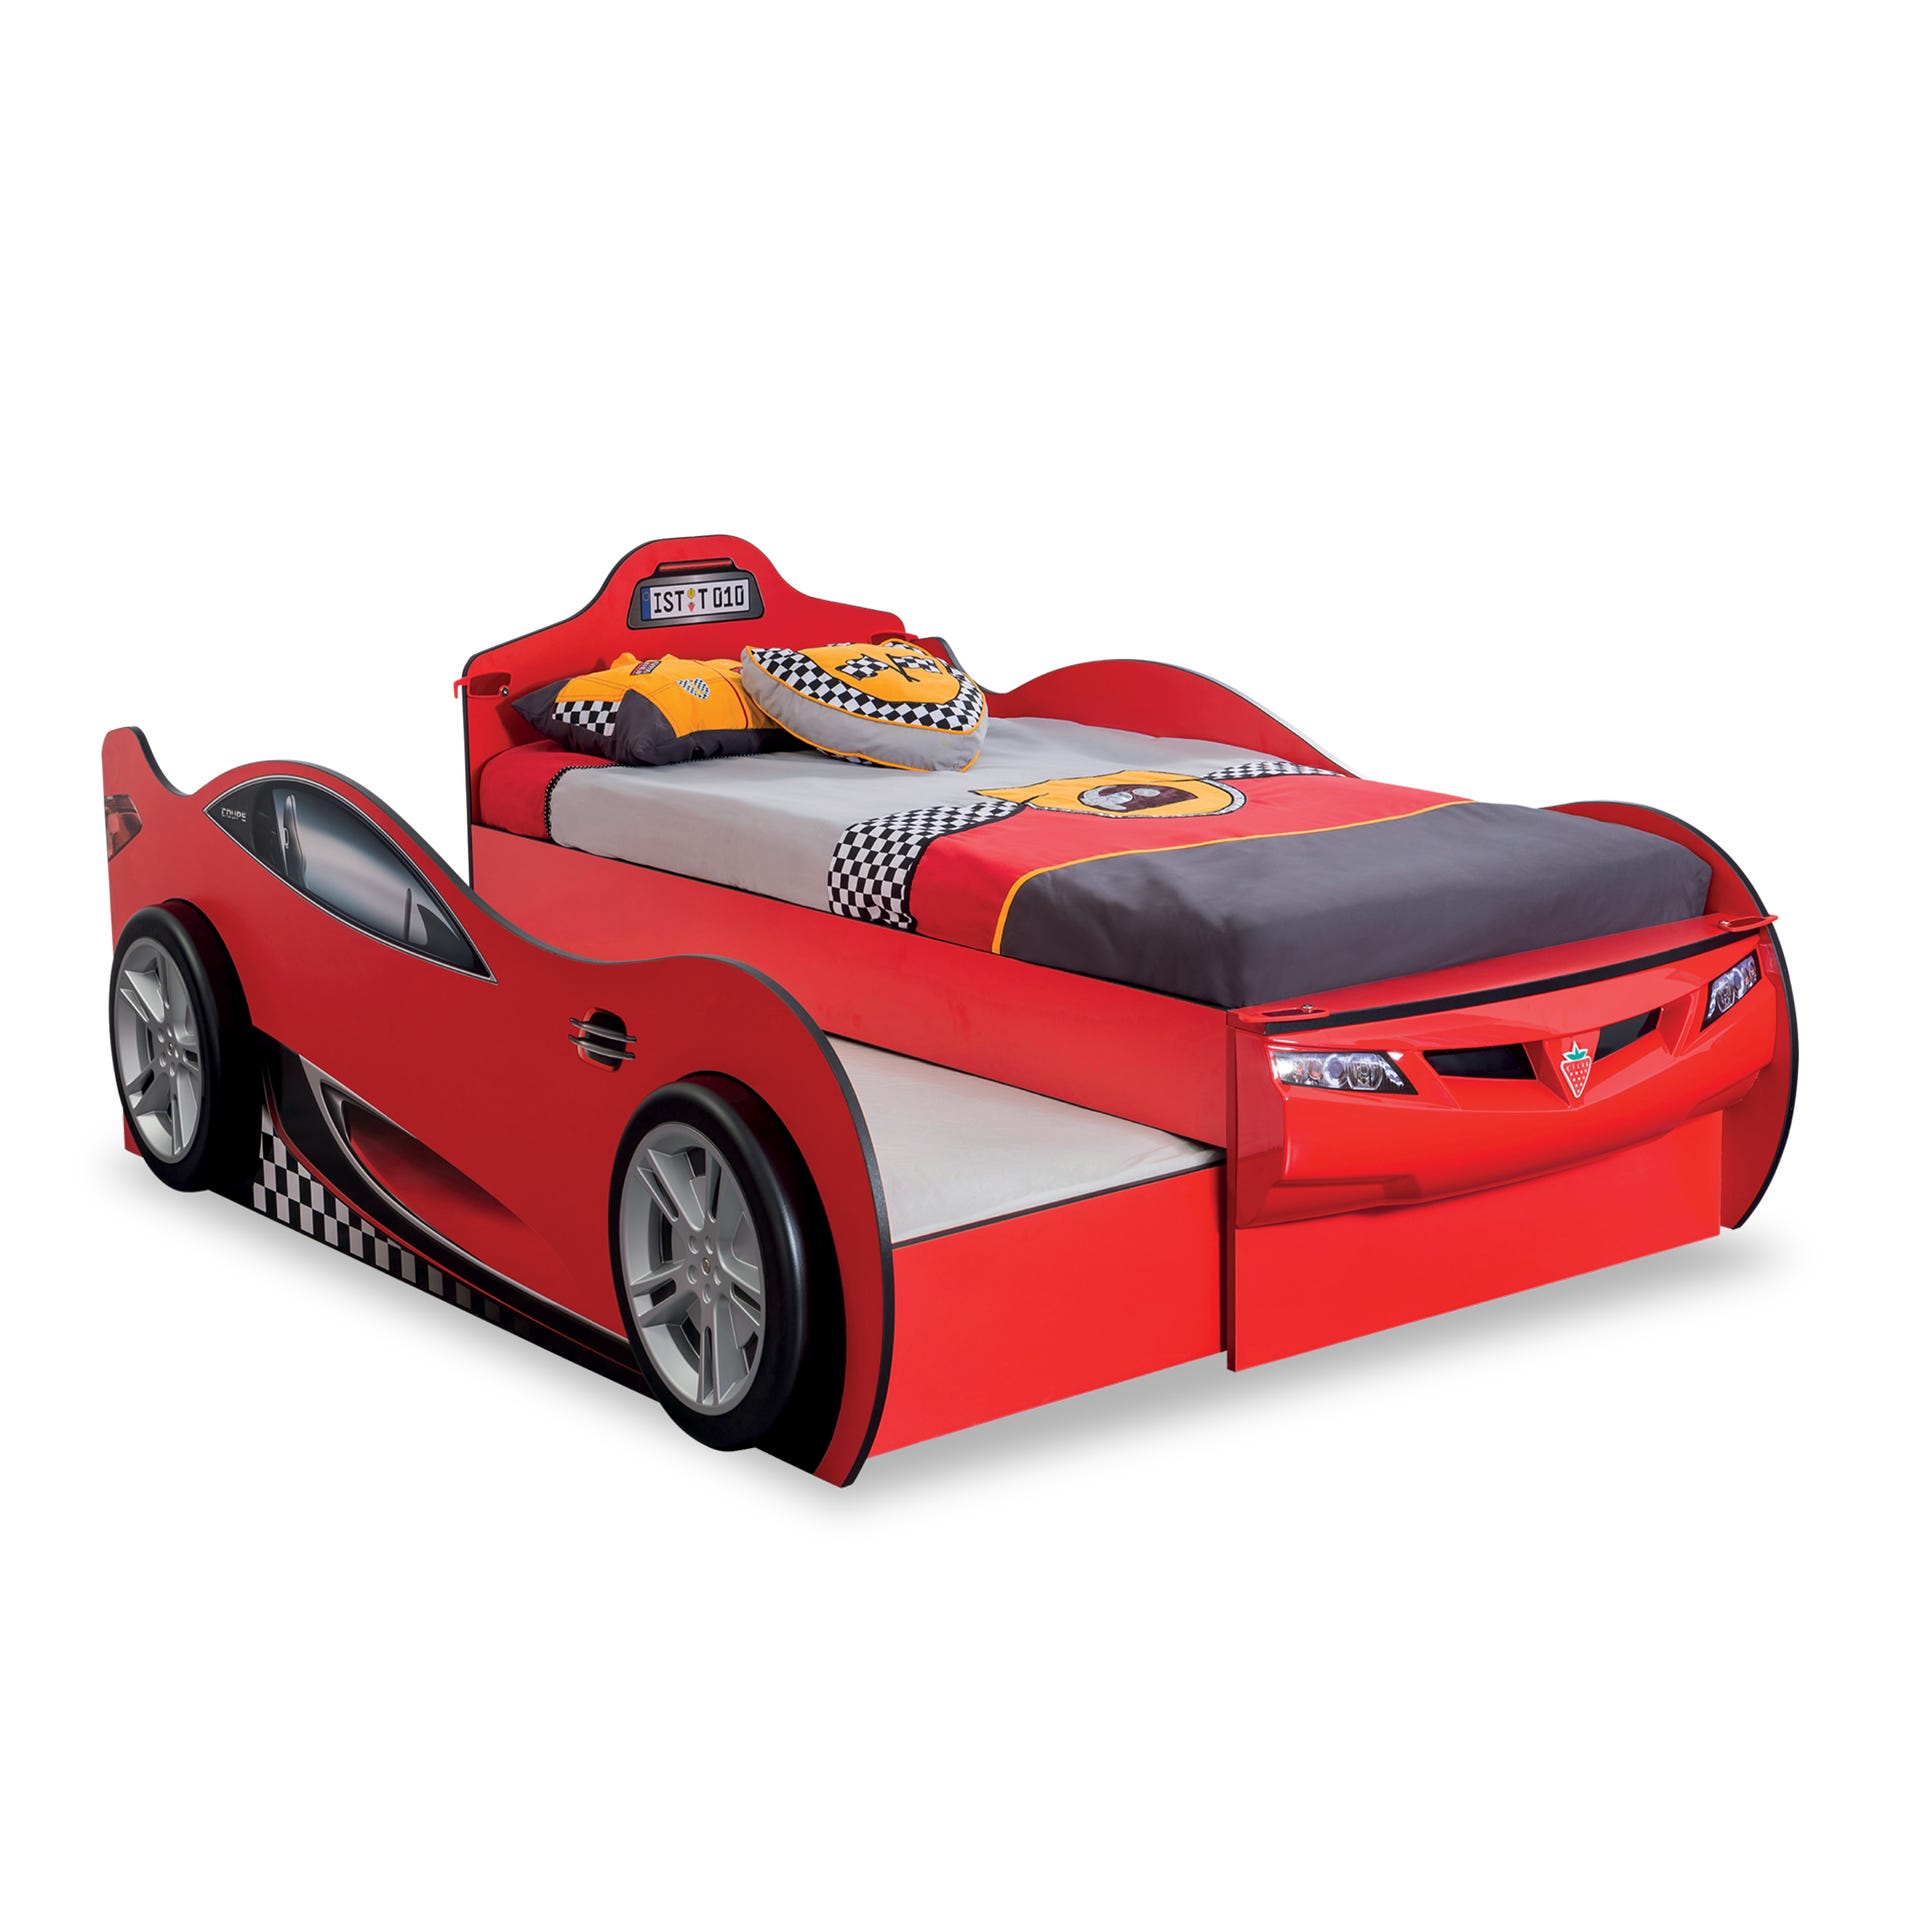 Race Cup Auto letto macchina per bambini (con letto amico) (rosso